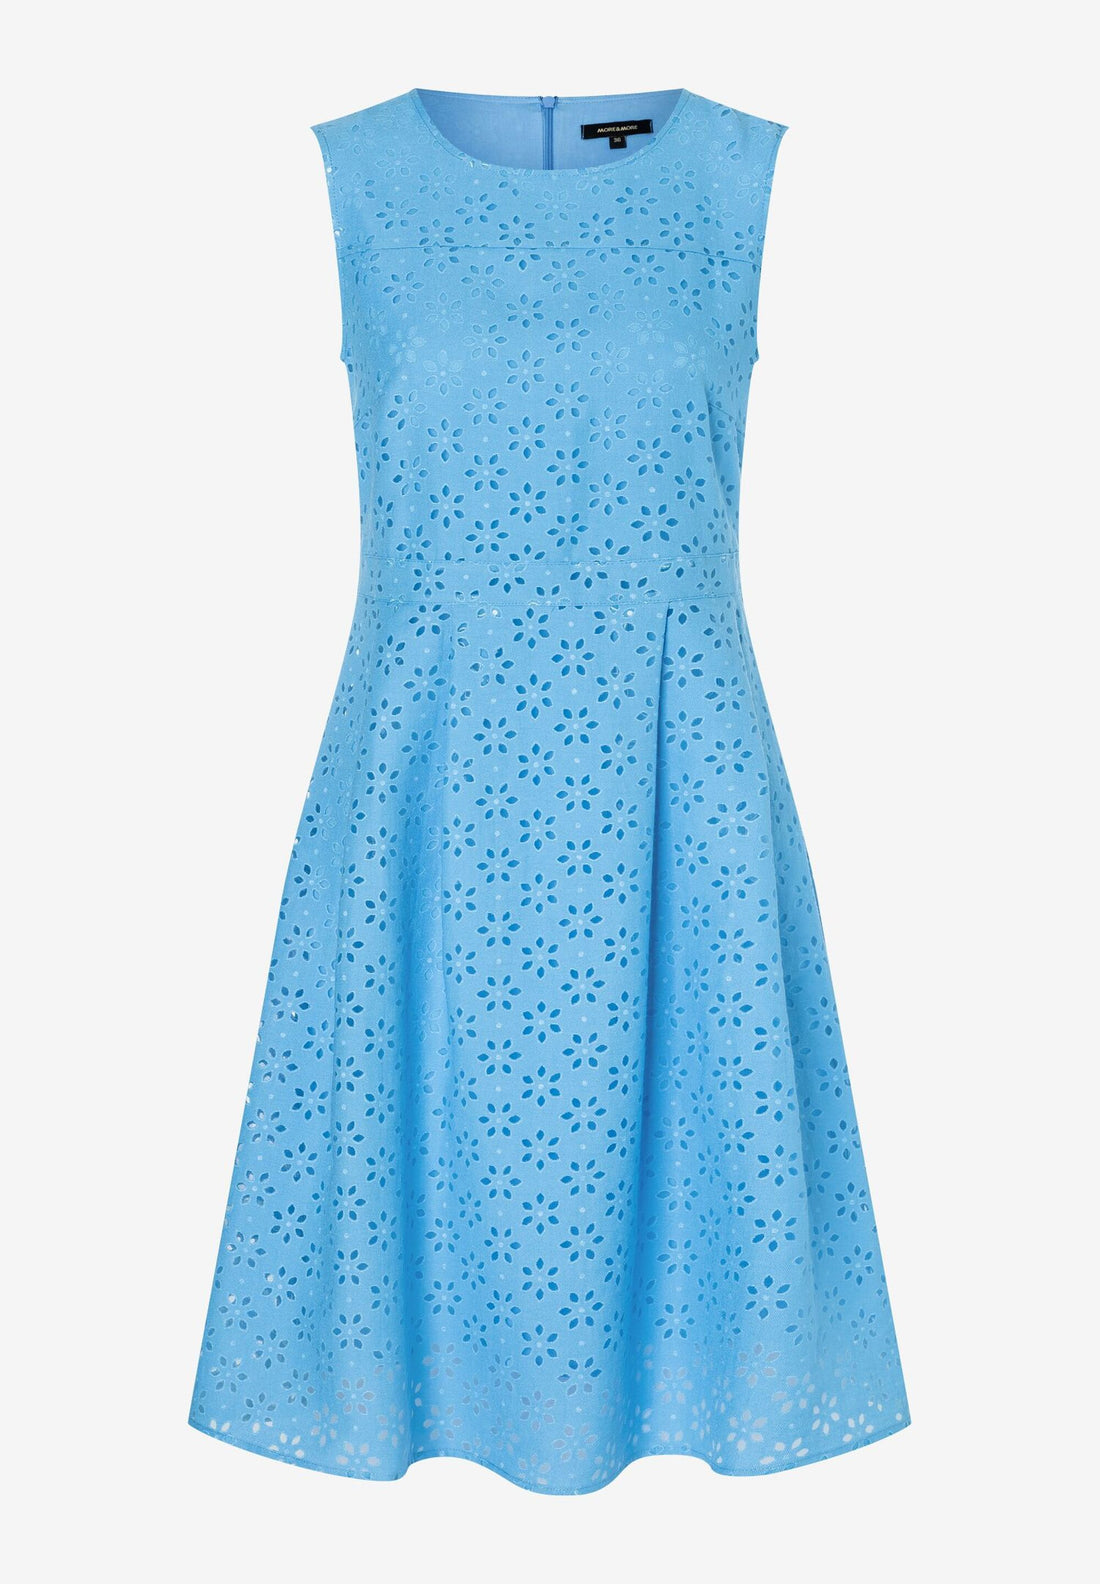 Blue Sleeveless A-Line Short Dress_01